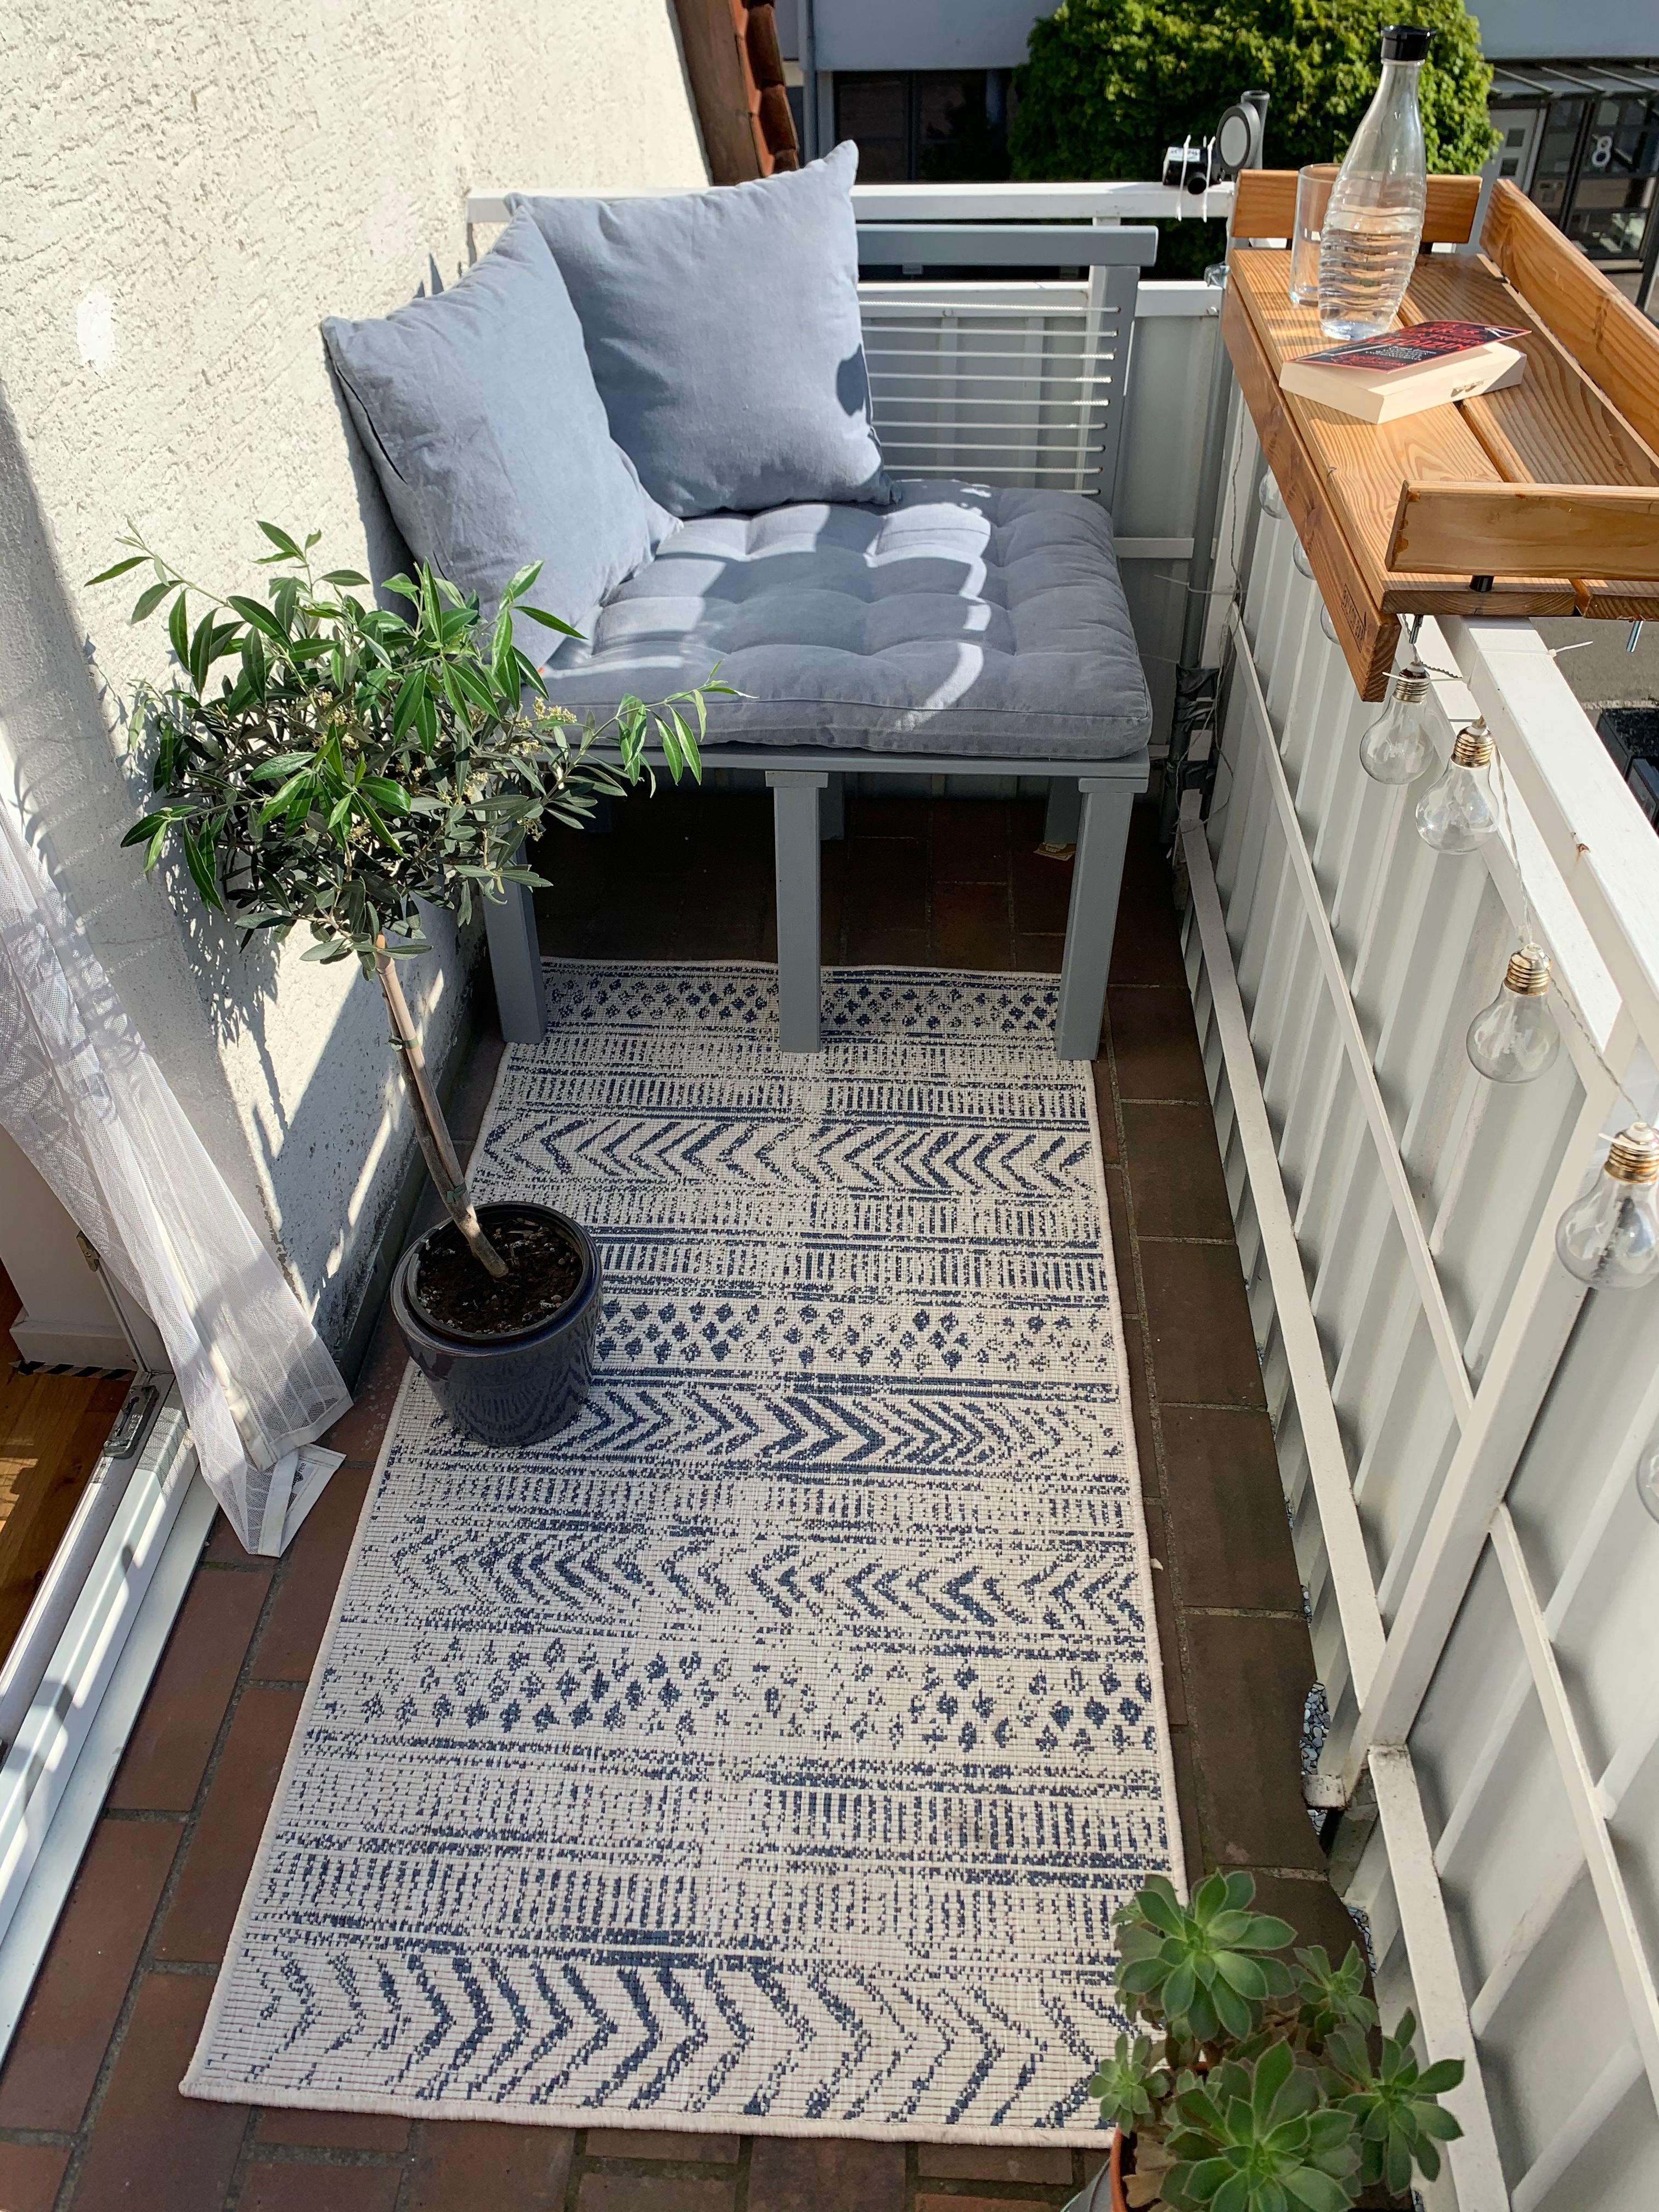 Endlich auch bereit für draußen sein an schönen Sonnentagen. Große Liebe für unsere DIY Sitzbank. 🤩 #outdoor #balkon 